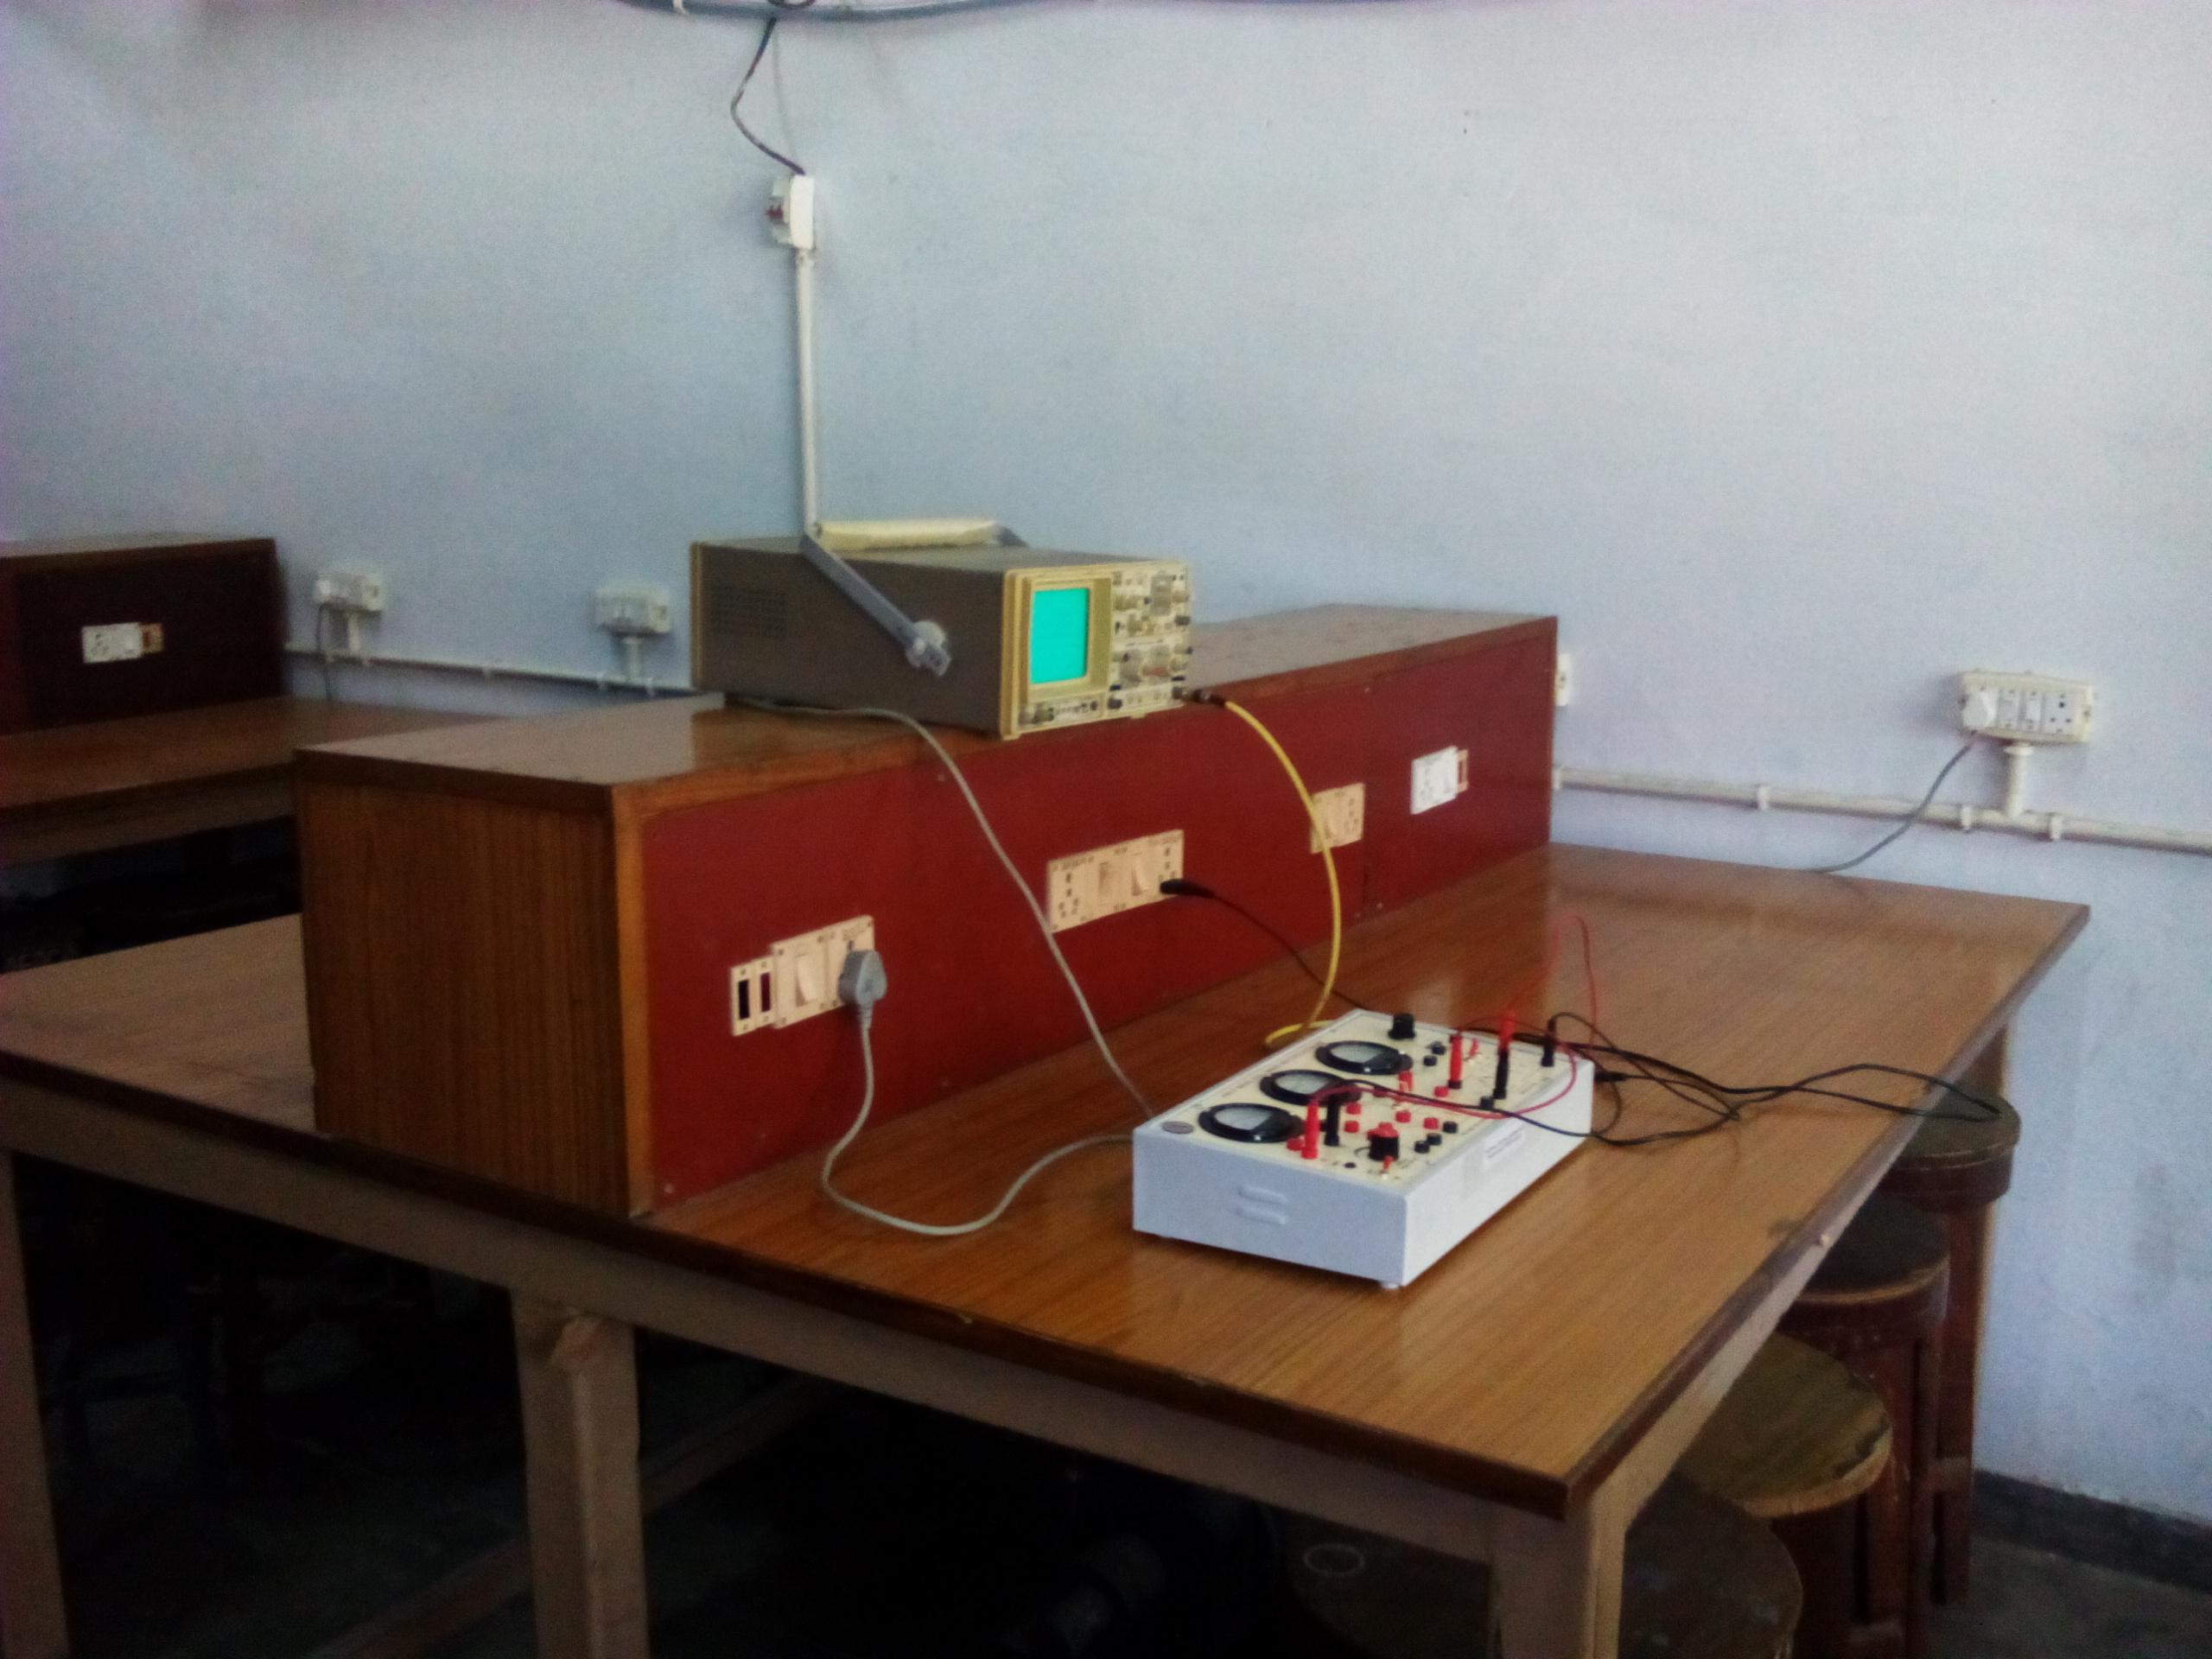 Basic Electronics Lab